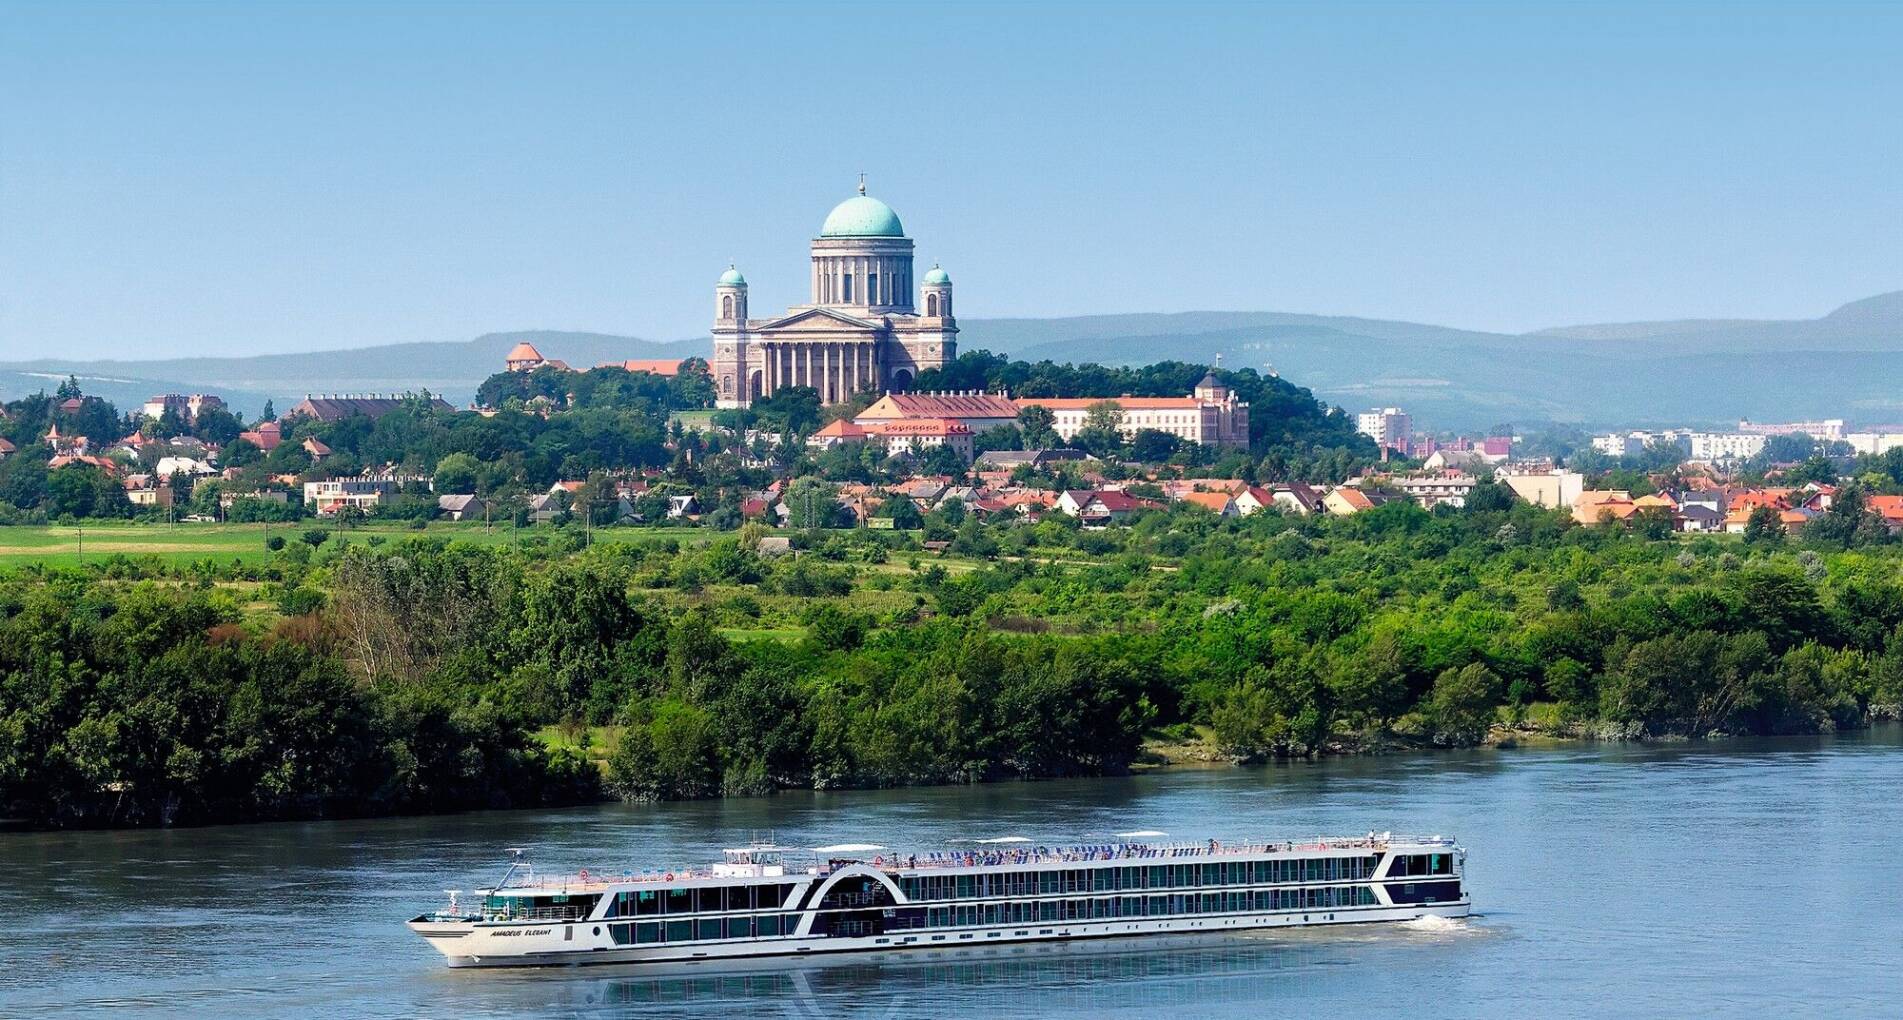 Donau, vierlandencruise door het hart van Europa - Oostenrijk - 1